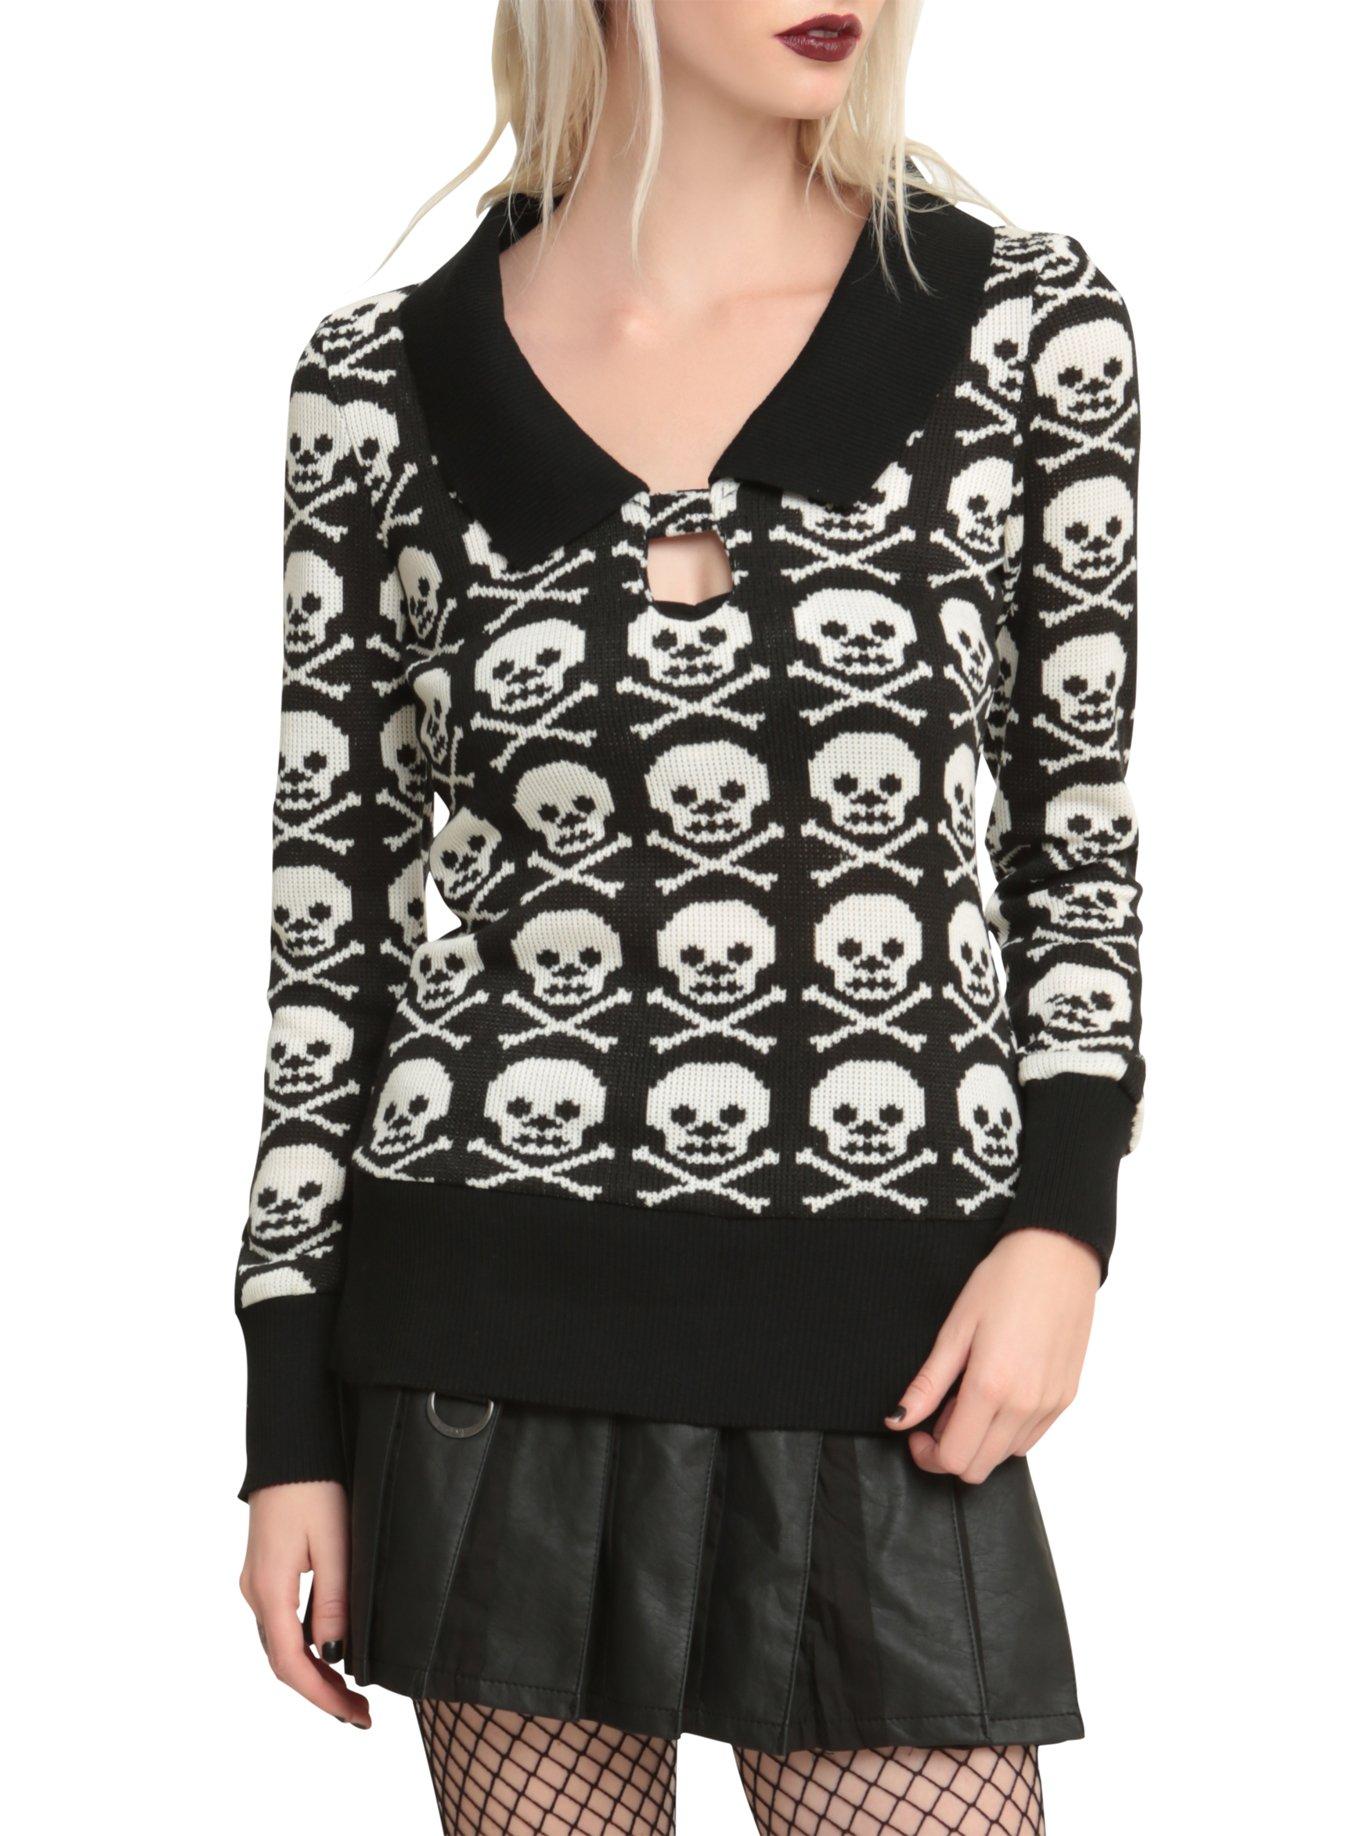 Jawbreaker Black And White Skull Sweater, BLACK, hi-res